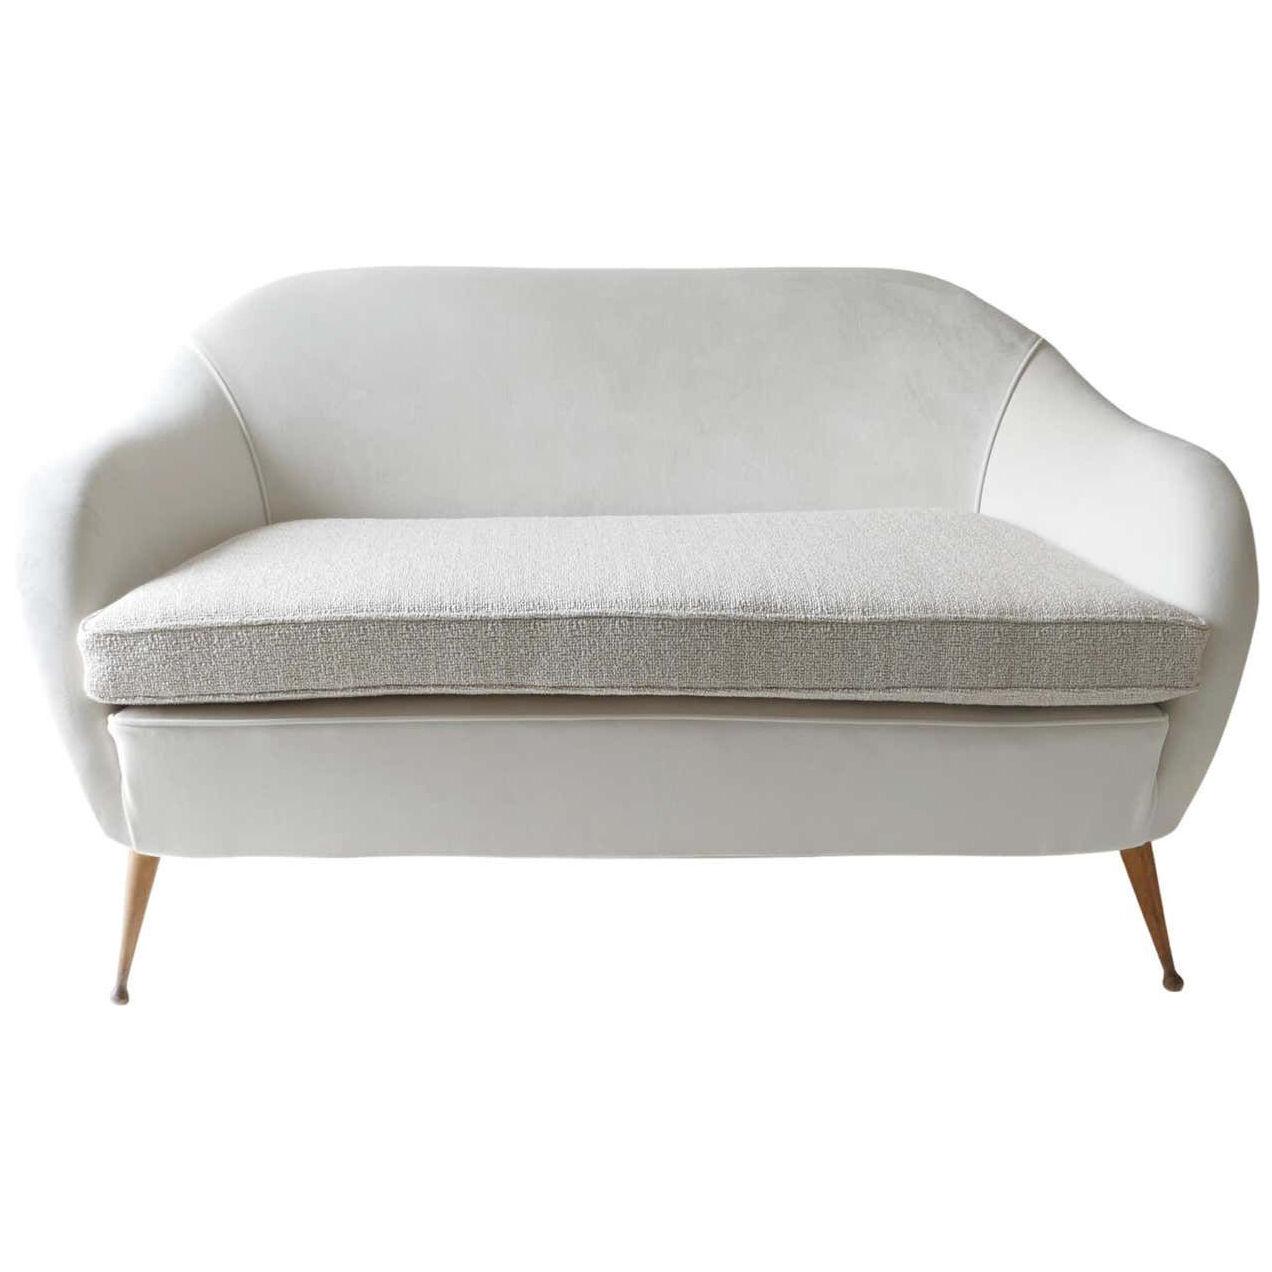 Italian Sofa, 1950s, Reupholstered in White Velvet